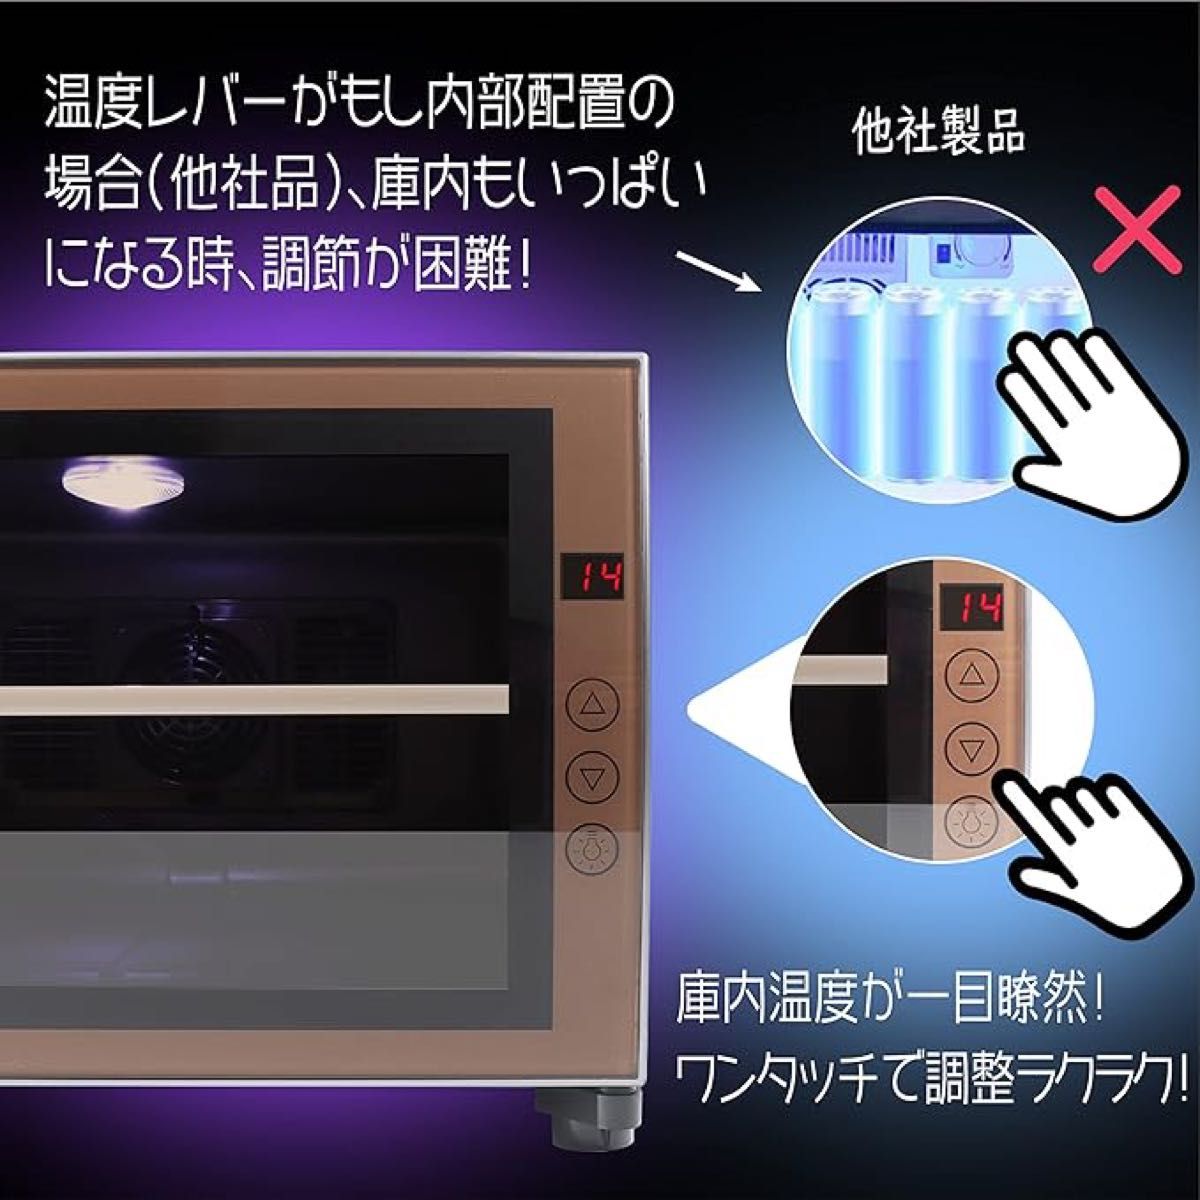 【匿名配送】小型冷蔵庫 23L 静音 おしゃれ 省エネ ミニ電子冷蔵庫 